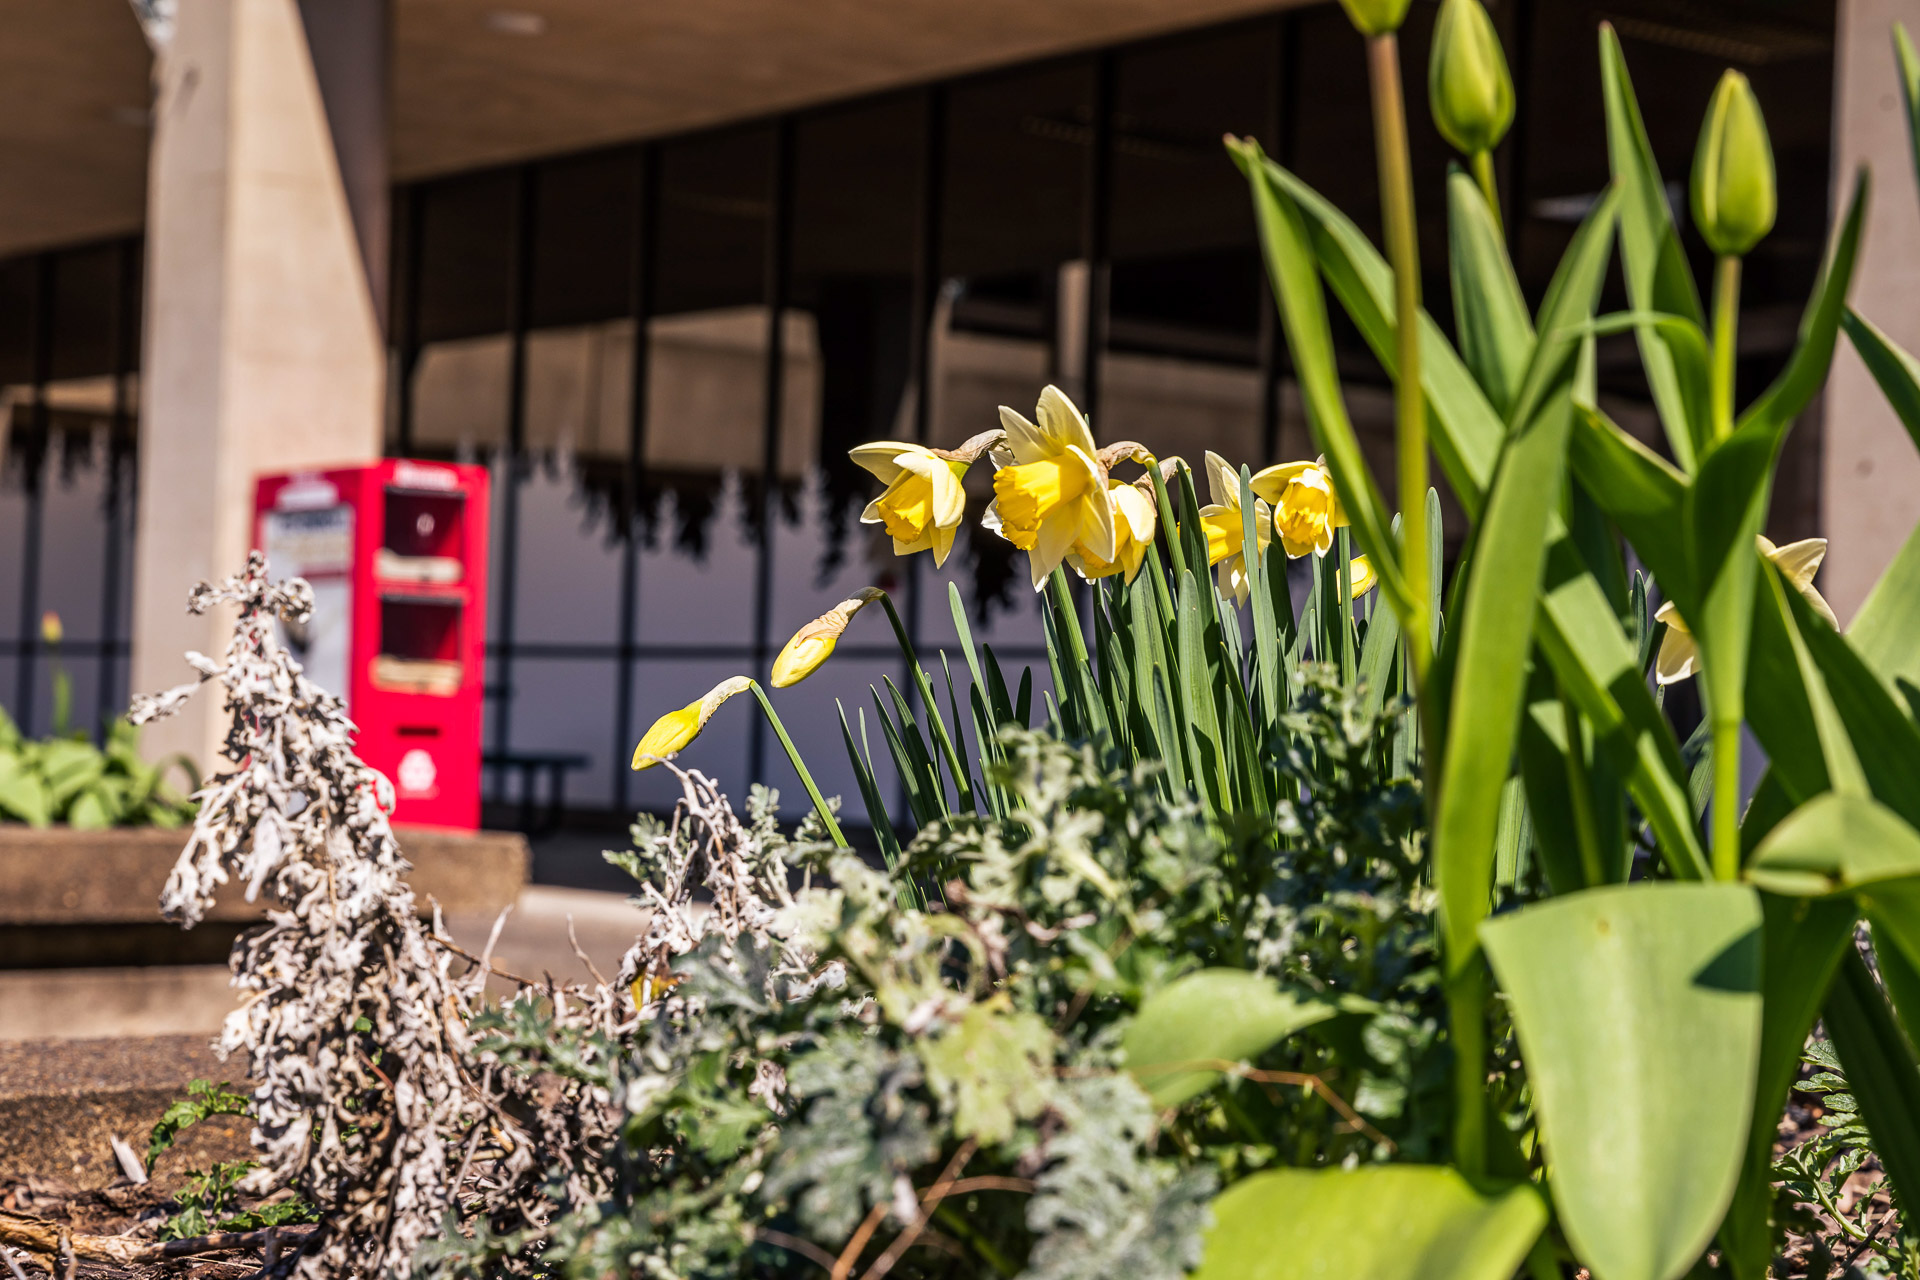 daffodils on campus